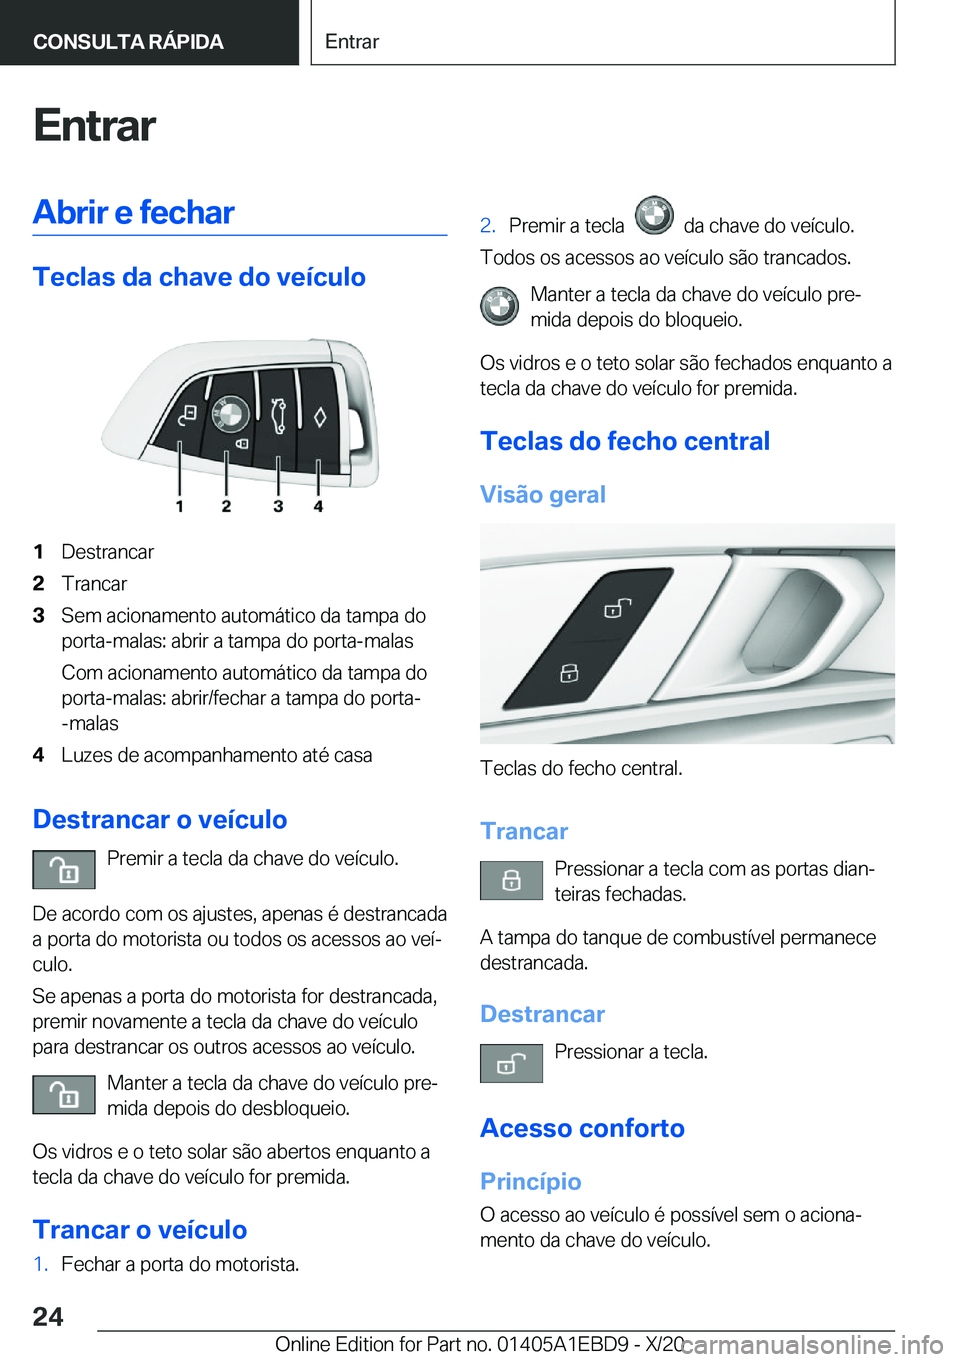 BMW 3 SERIES 2021  Manual do condutor (in Portuguese) �E�n�t�r�a�r�A�b�r�i�r��e��f�e�c�h�a�r
�T�e�c�l�a�s��d�a��c�h�a�v�e��d�o��v�e�